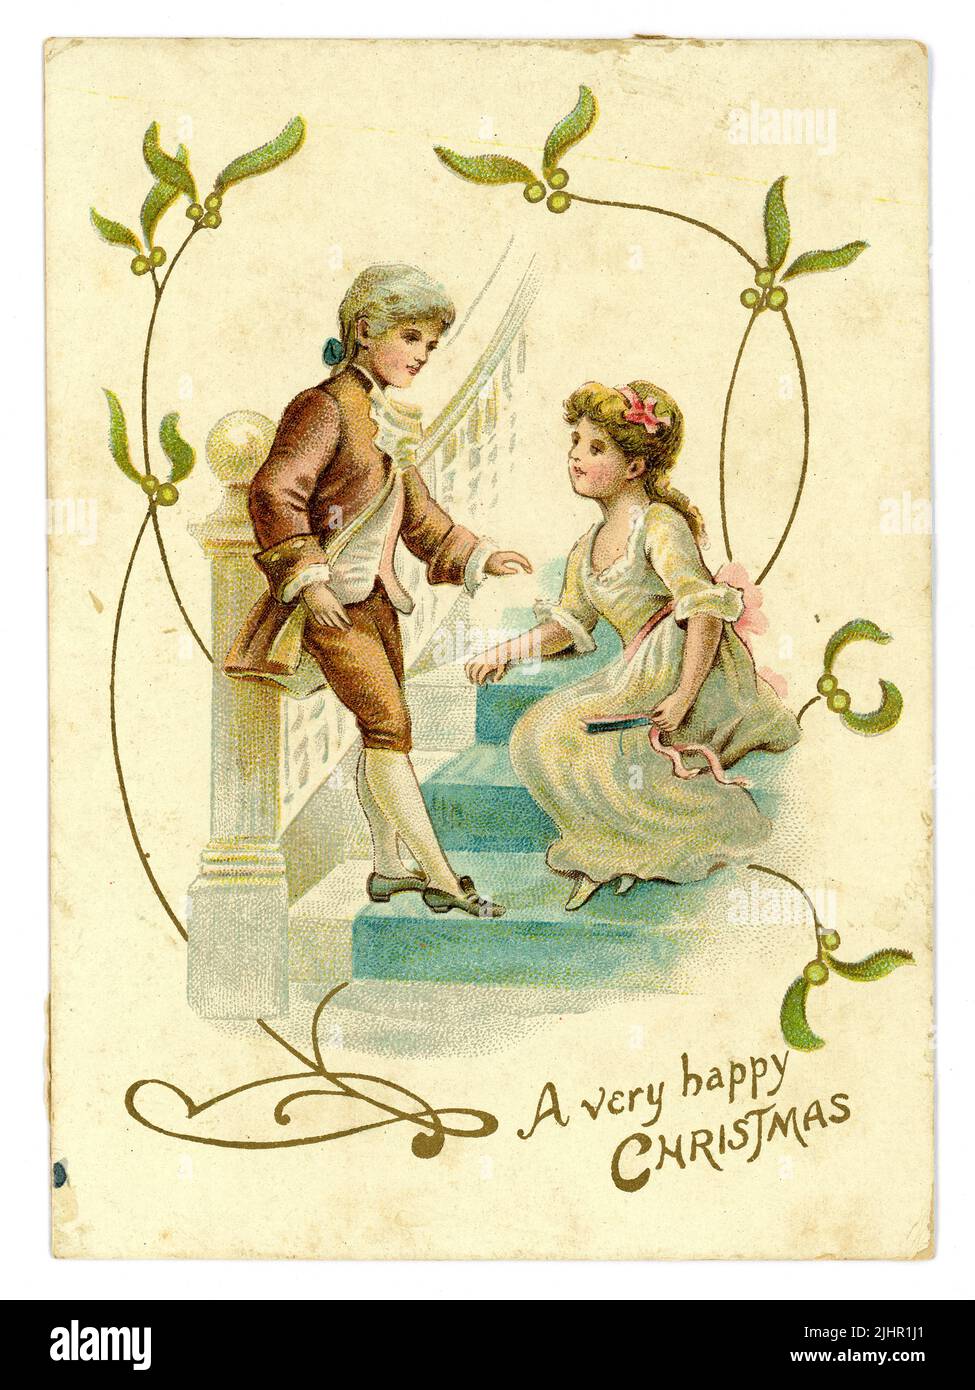 Carte de voeux de Noël originale de l'époque édouardienne, GUI, enfants dans le style de l'époque Régence (Regency était 1811-1820) vêtements enfant couple courting, vers 1905 R.-U. Banque D'Images